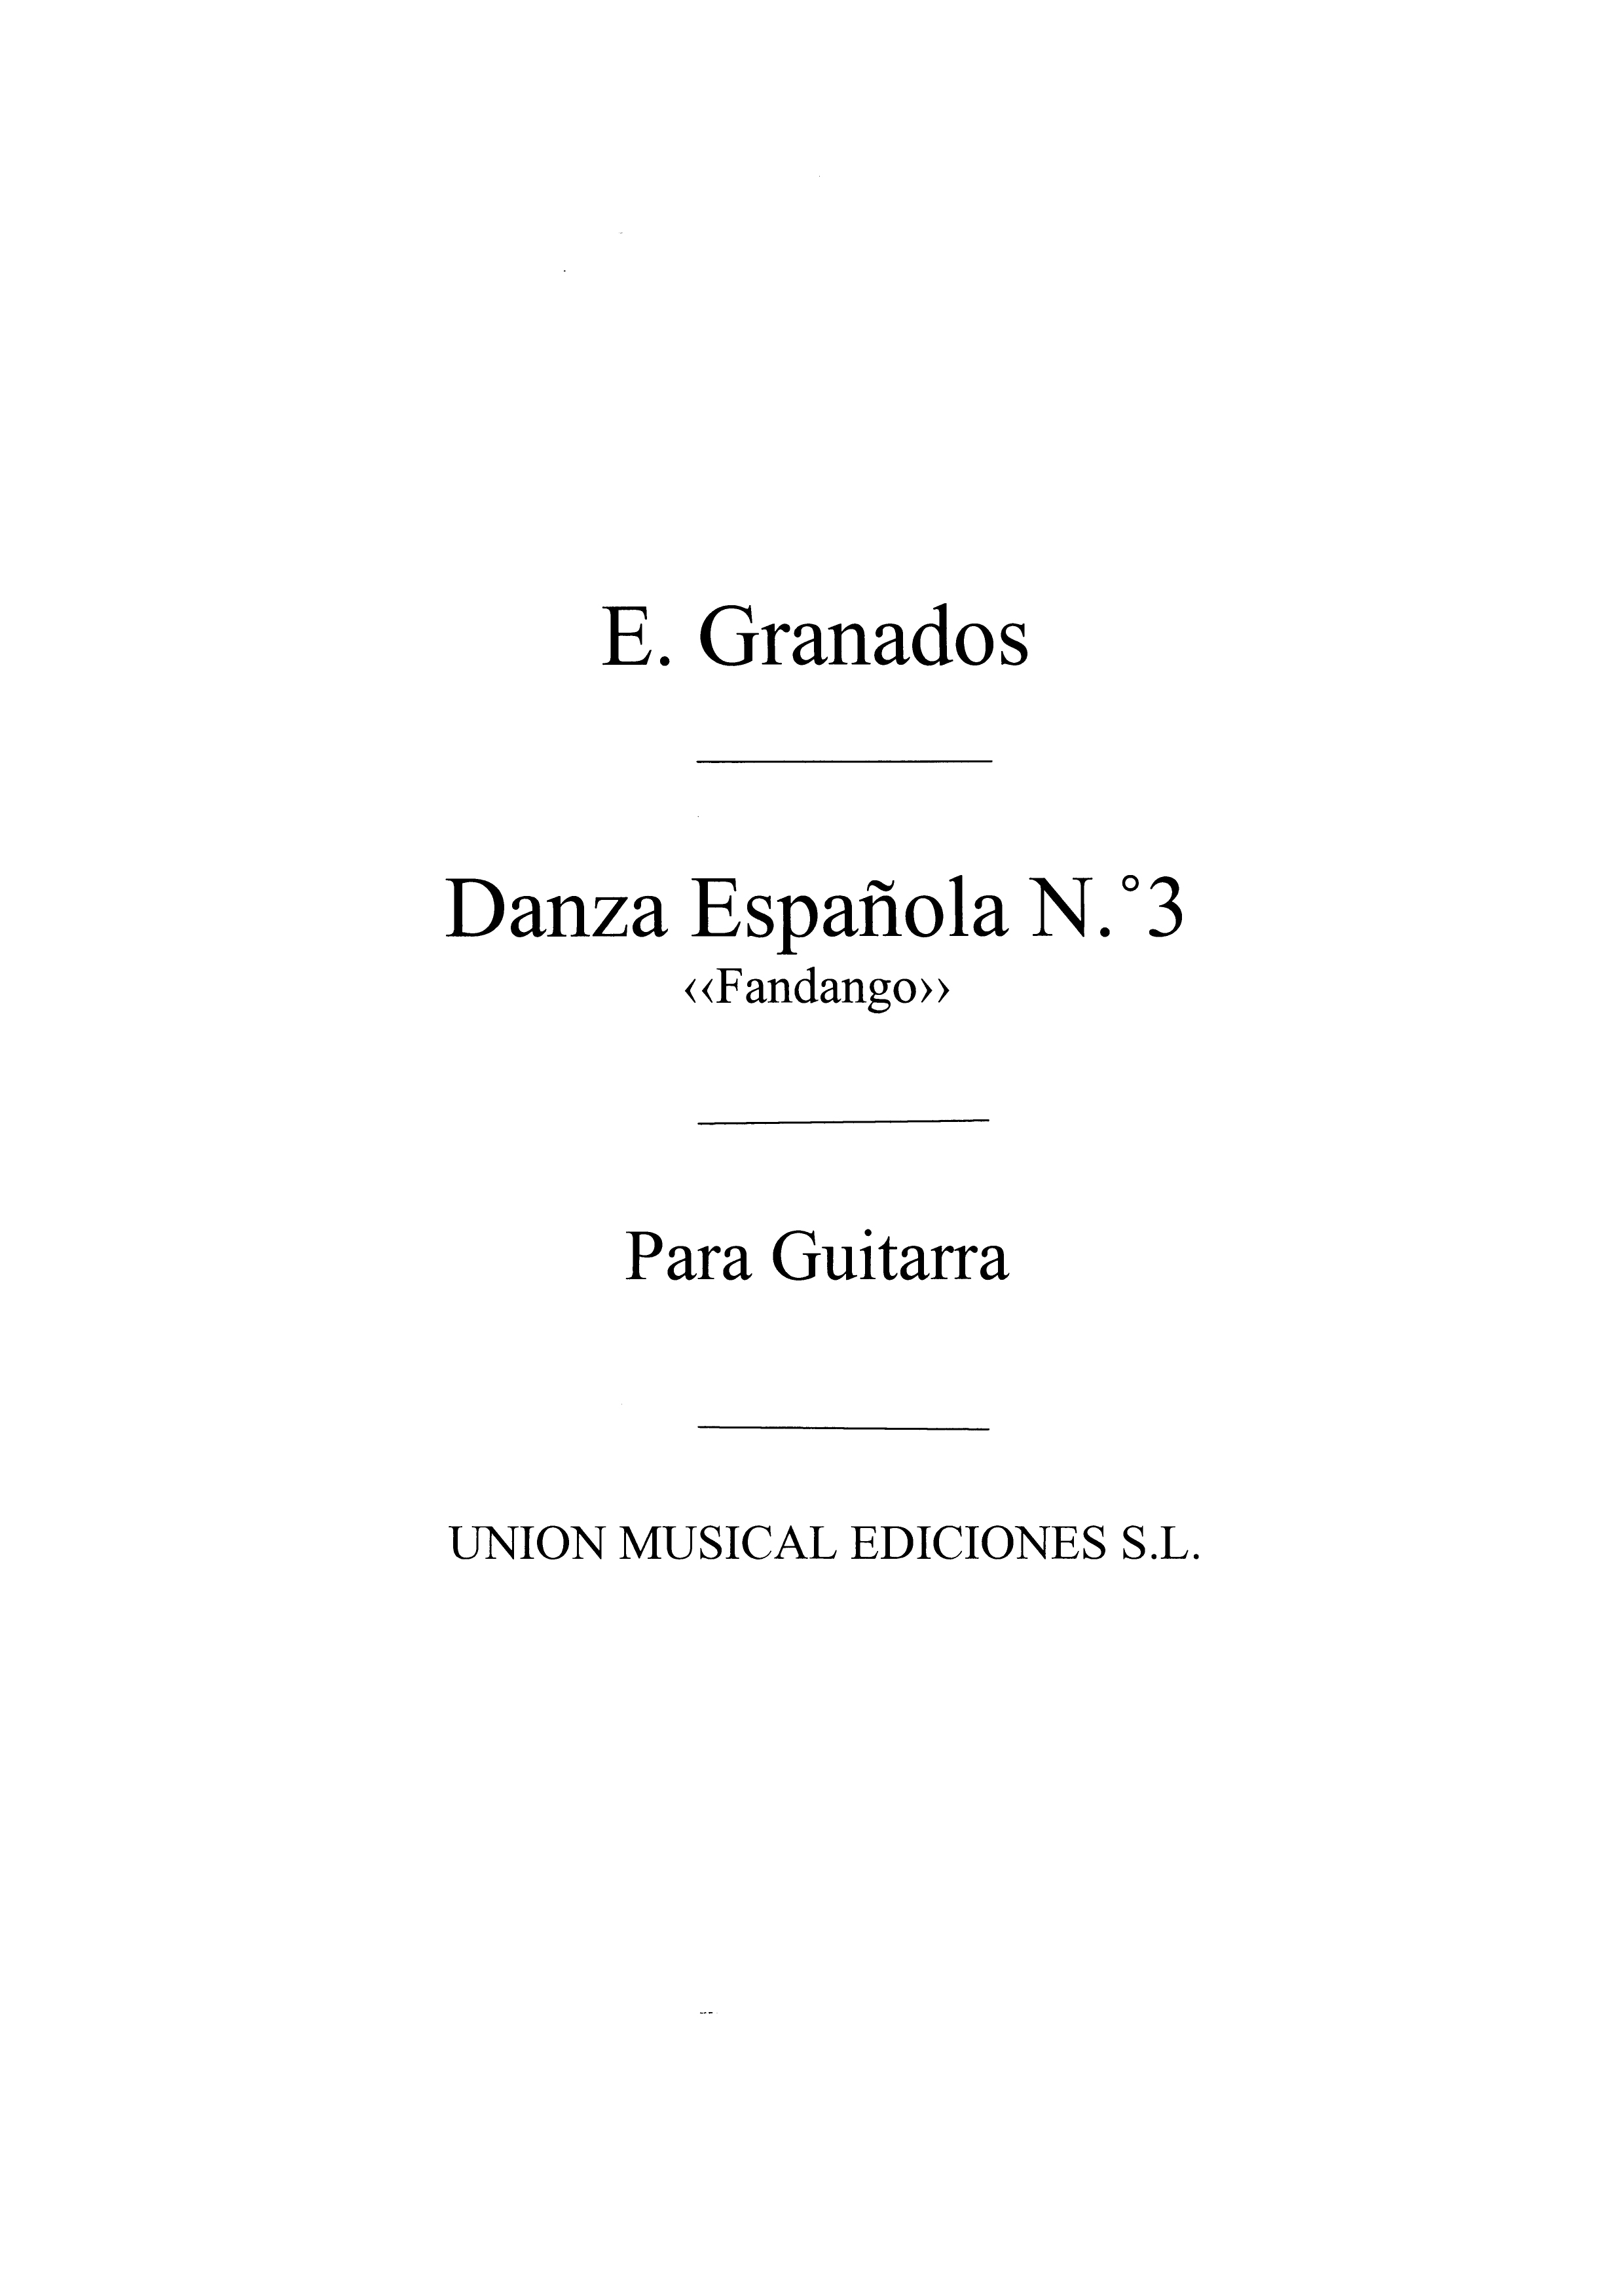 Granados Danza Espanola No.3 Fandango (azpiazu)